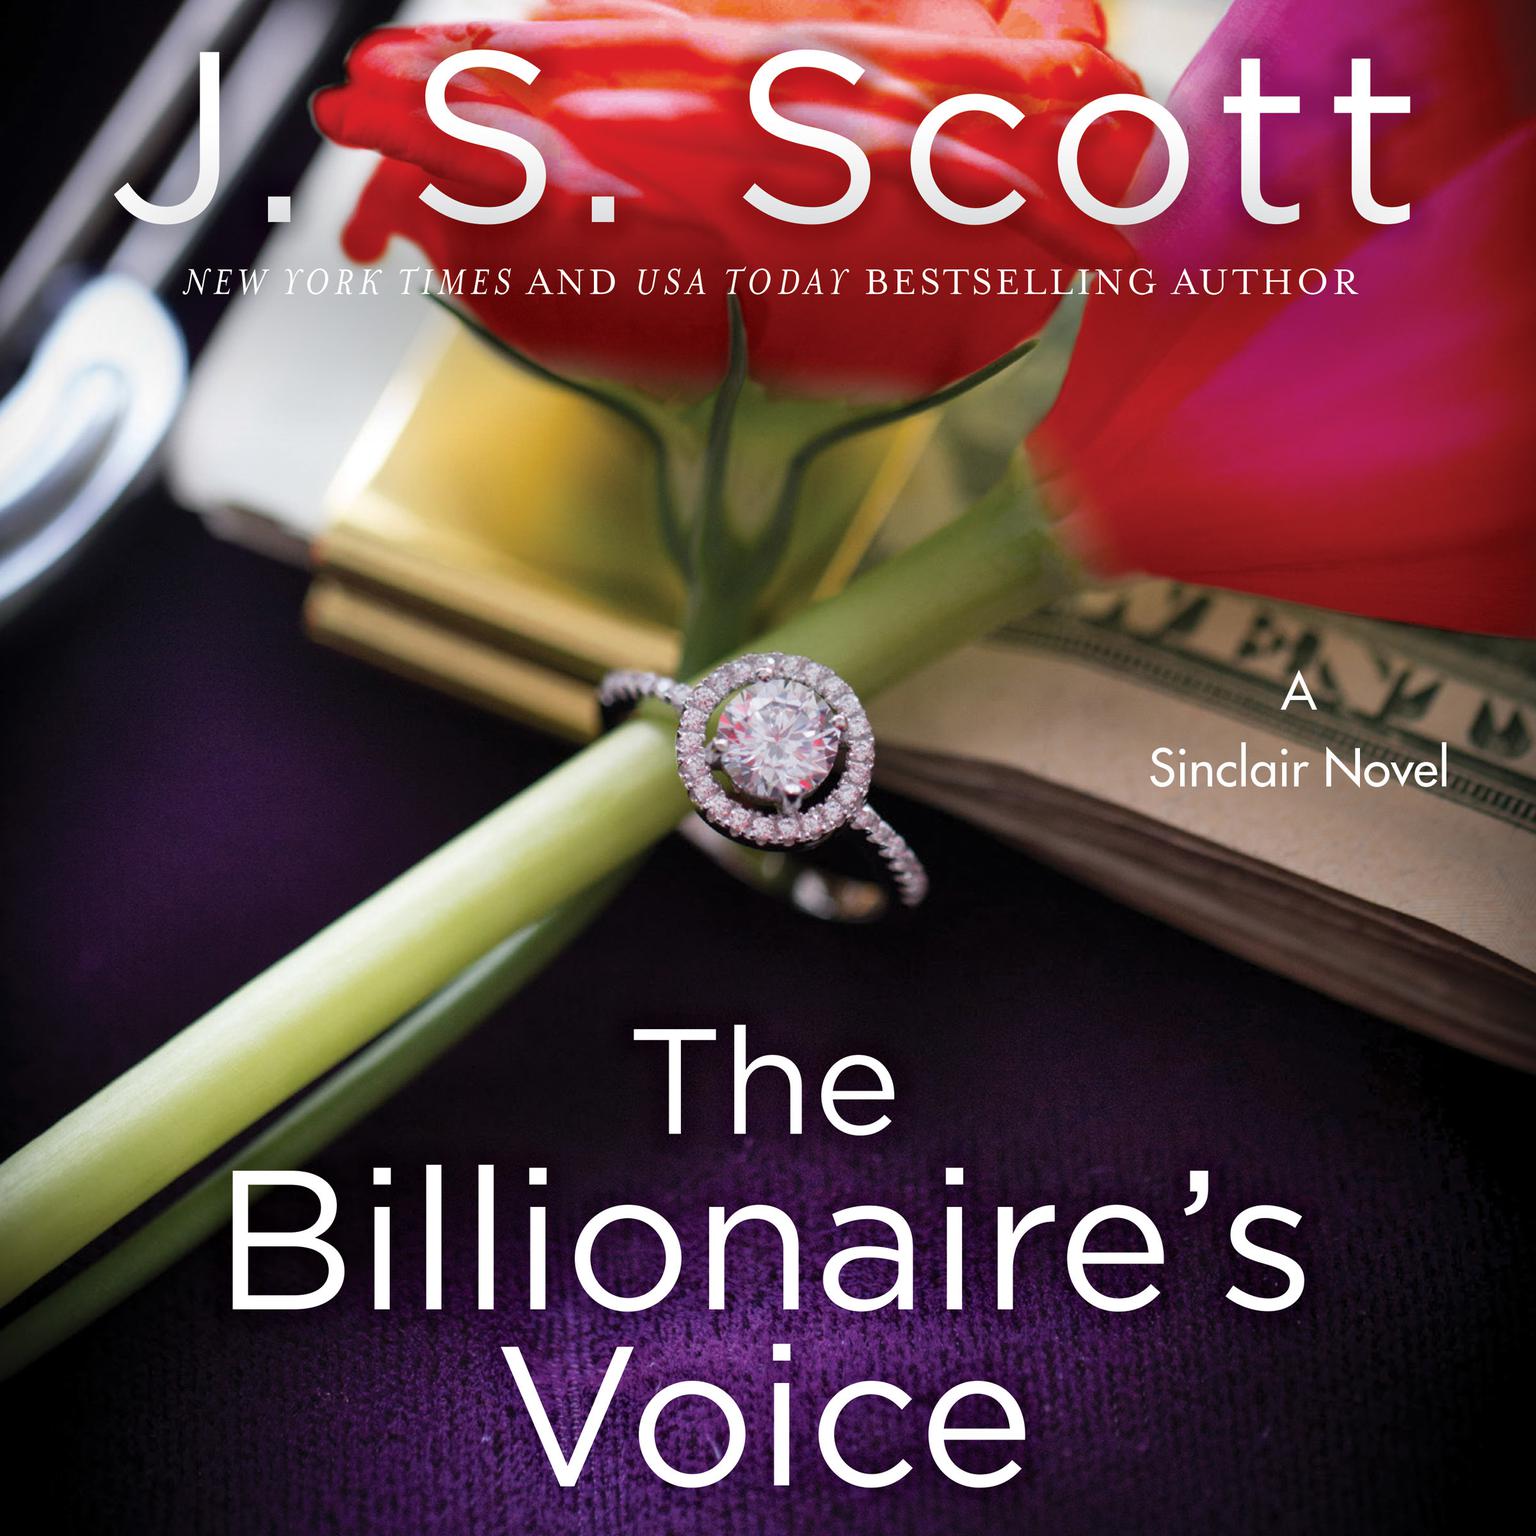 The Billionaires Voice: A Sinclair Novel Audiobook, by J. S. Scott